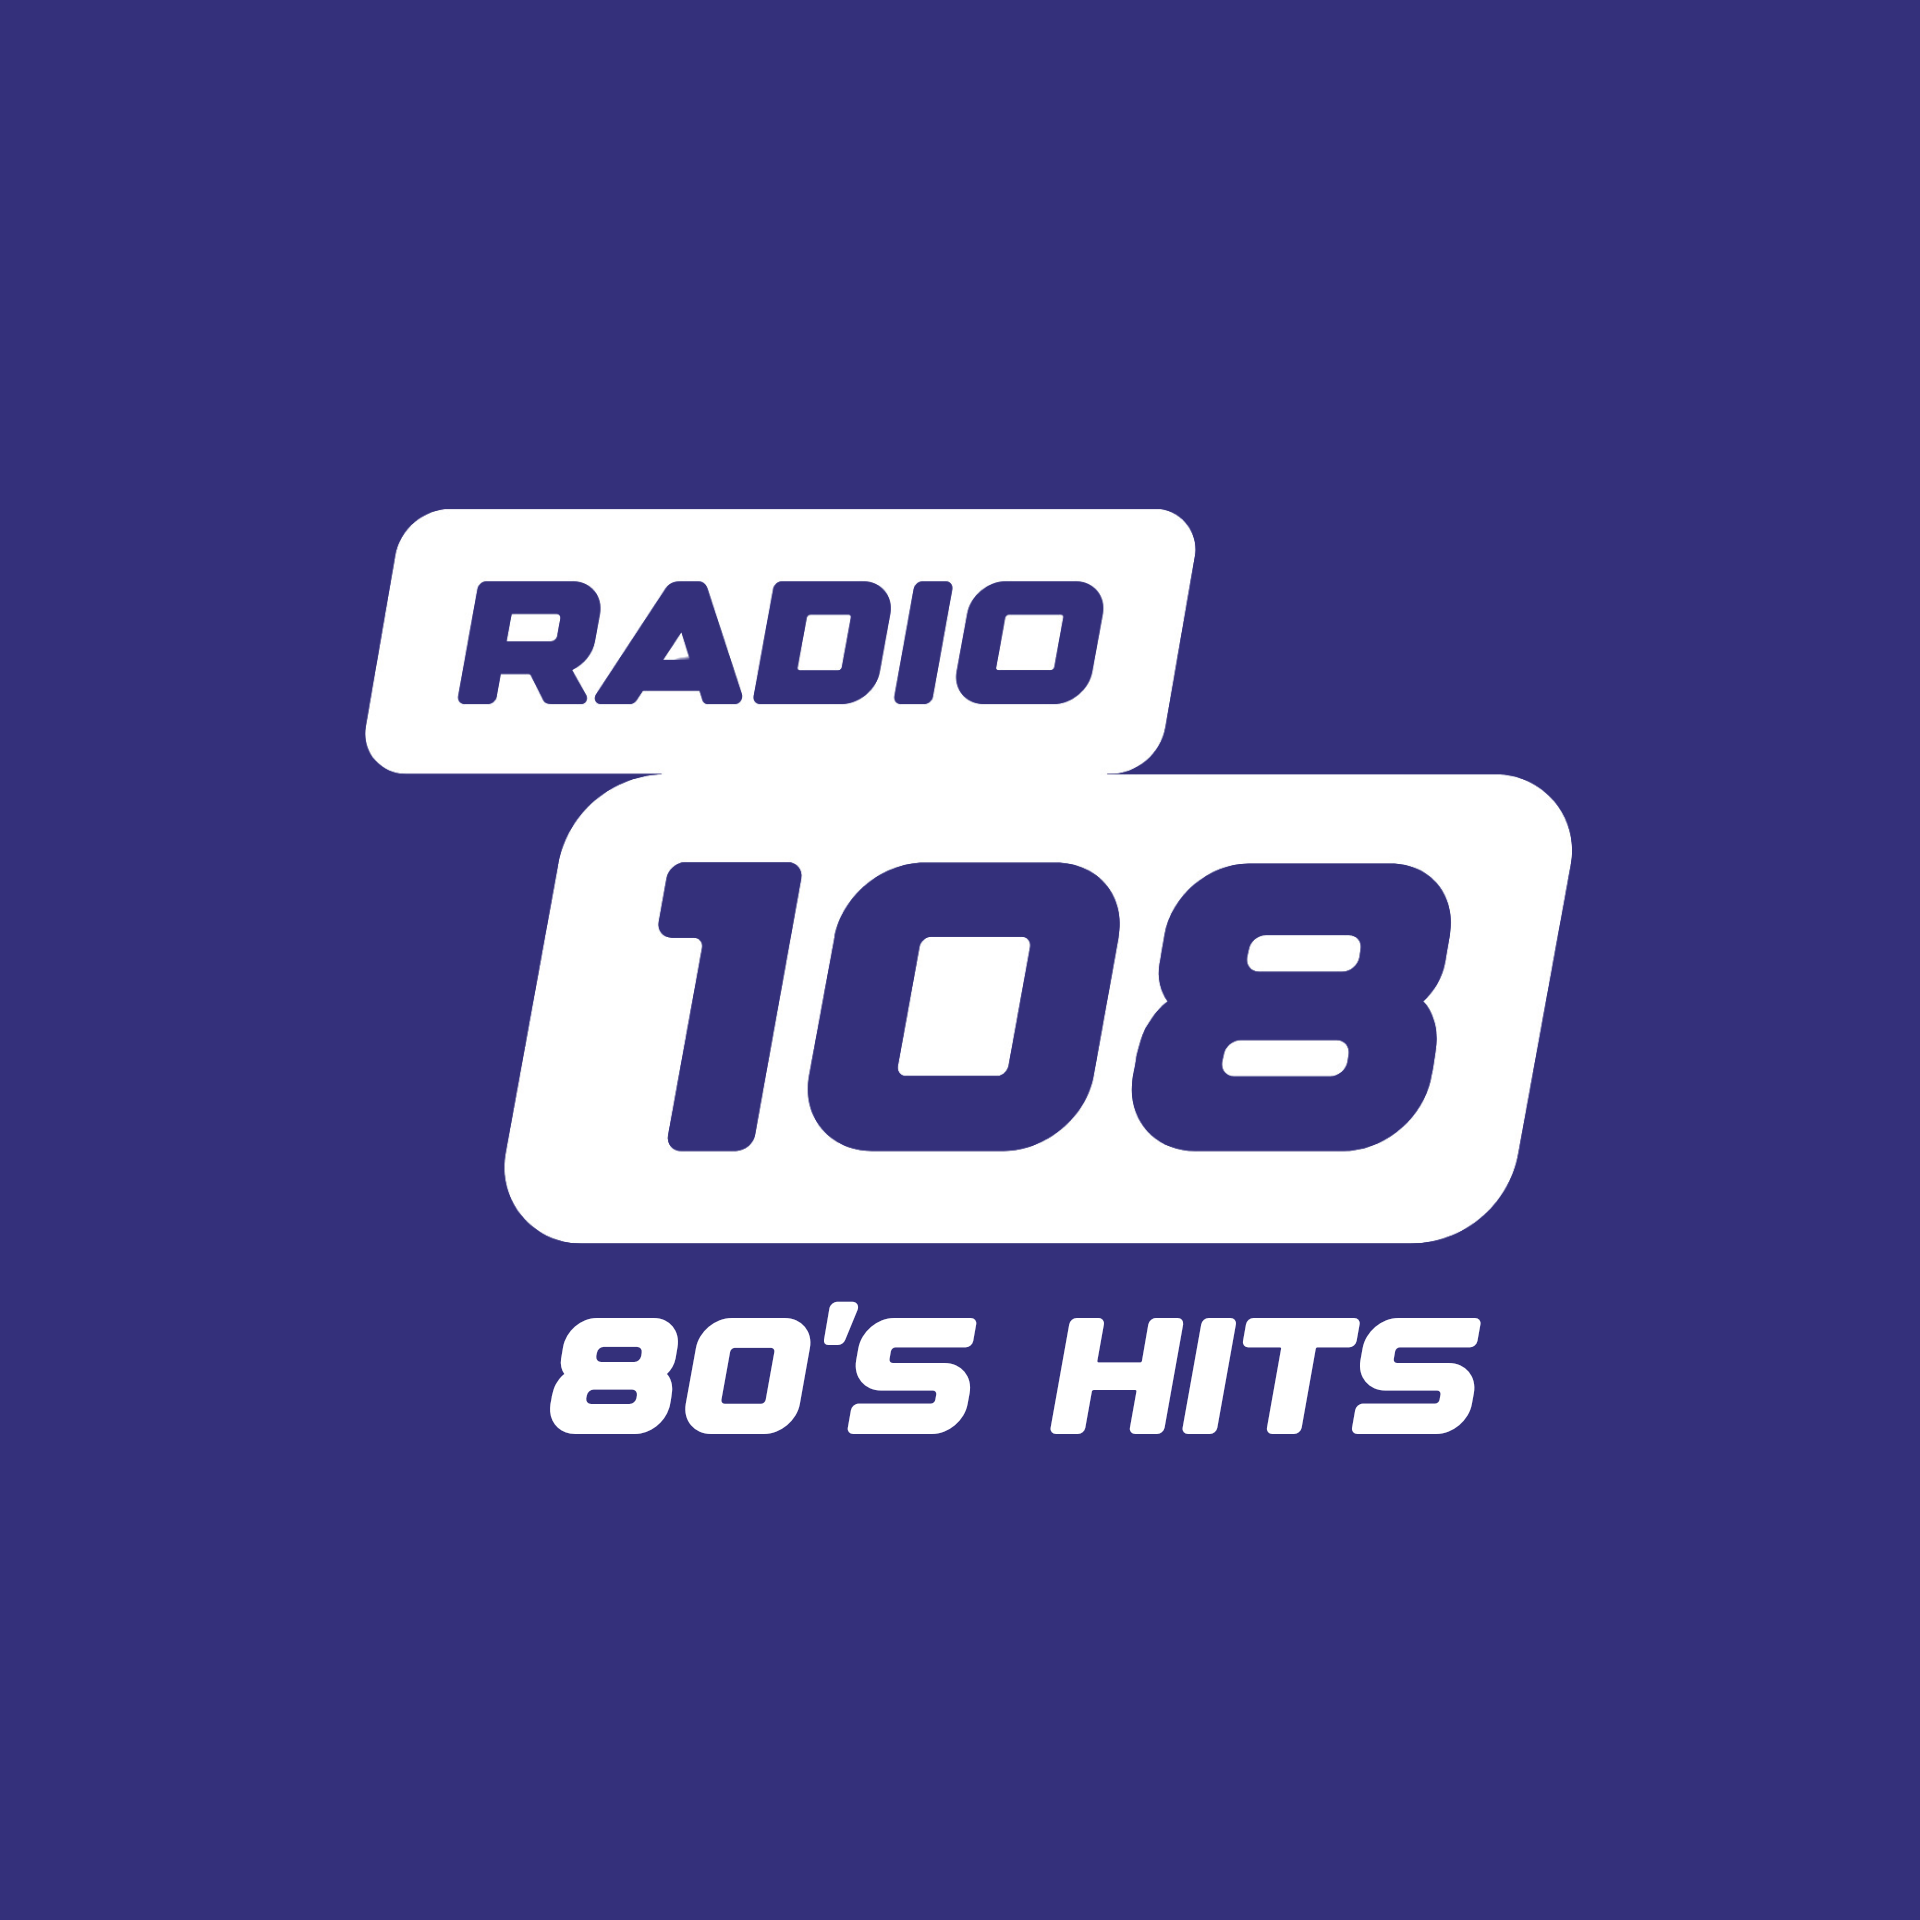 RADIO 108 - 80'S HITS